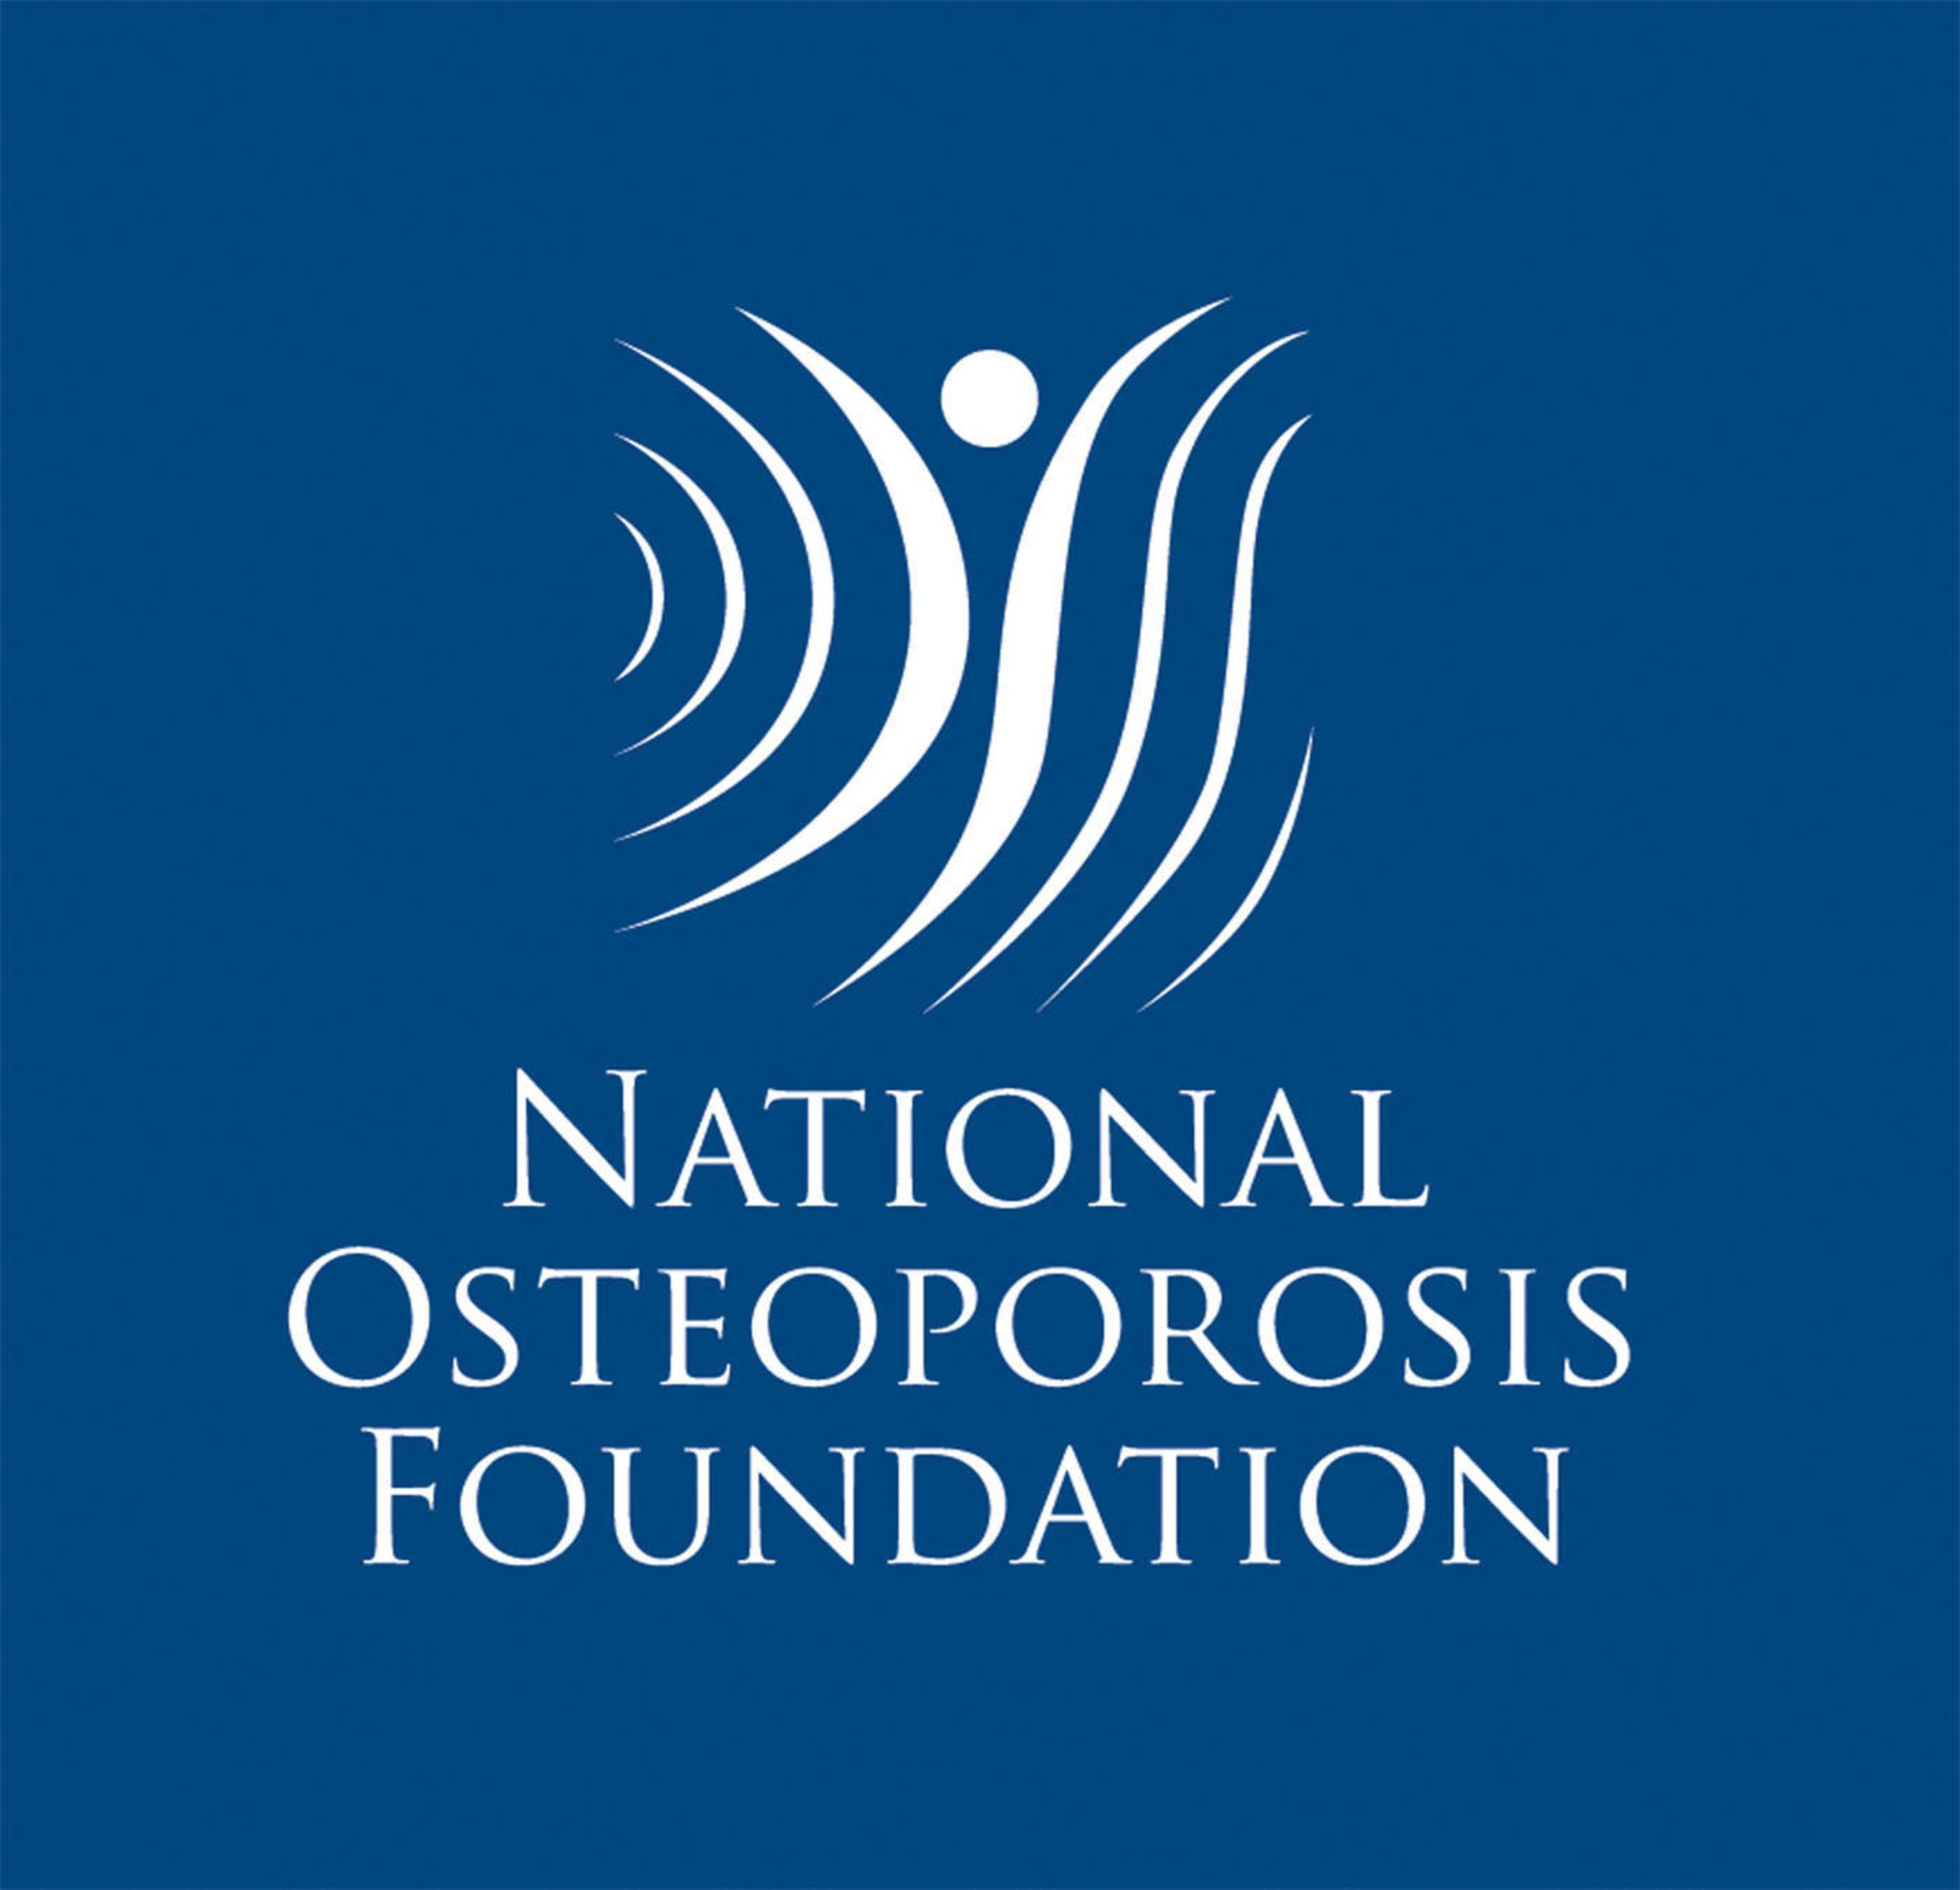 National Osteoporosis Foundation.